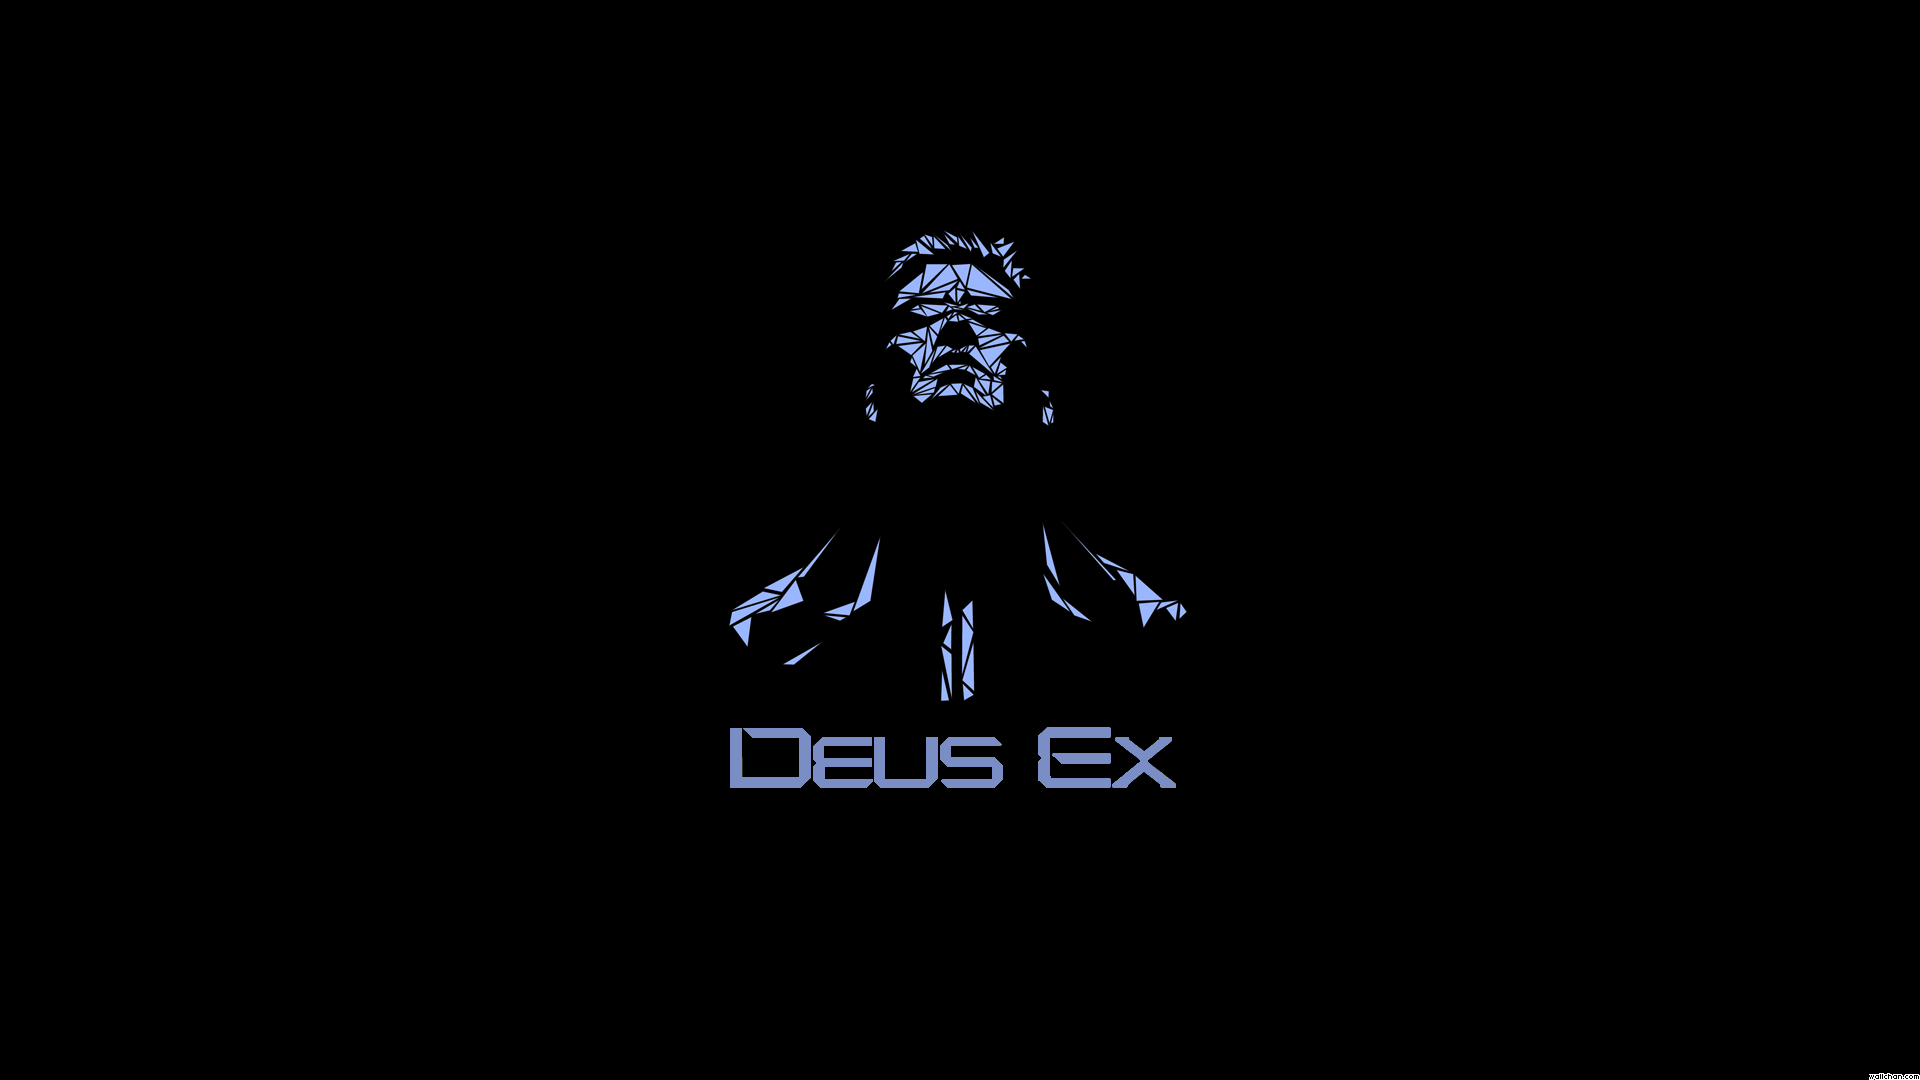 Video Game Deus Ex 1920x1080